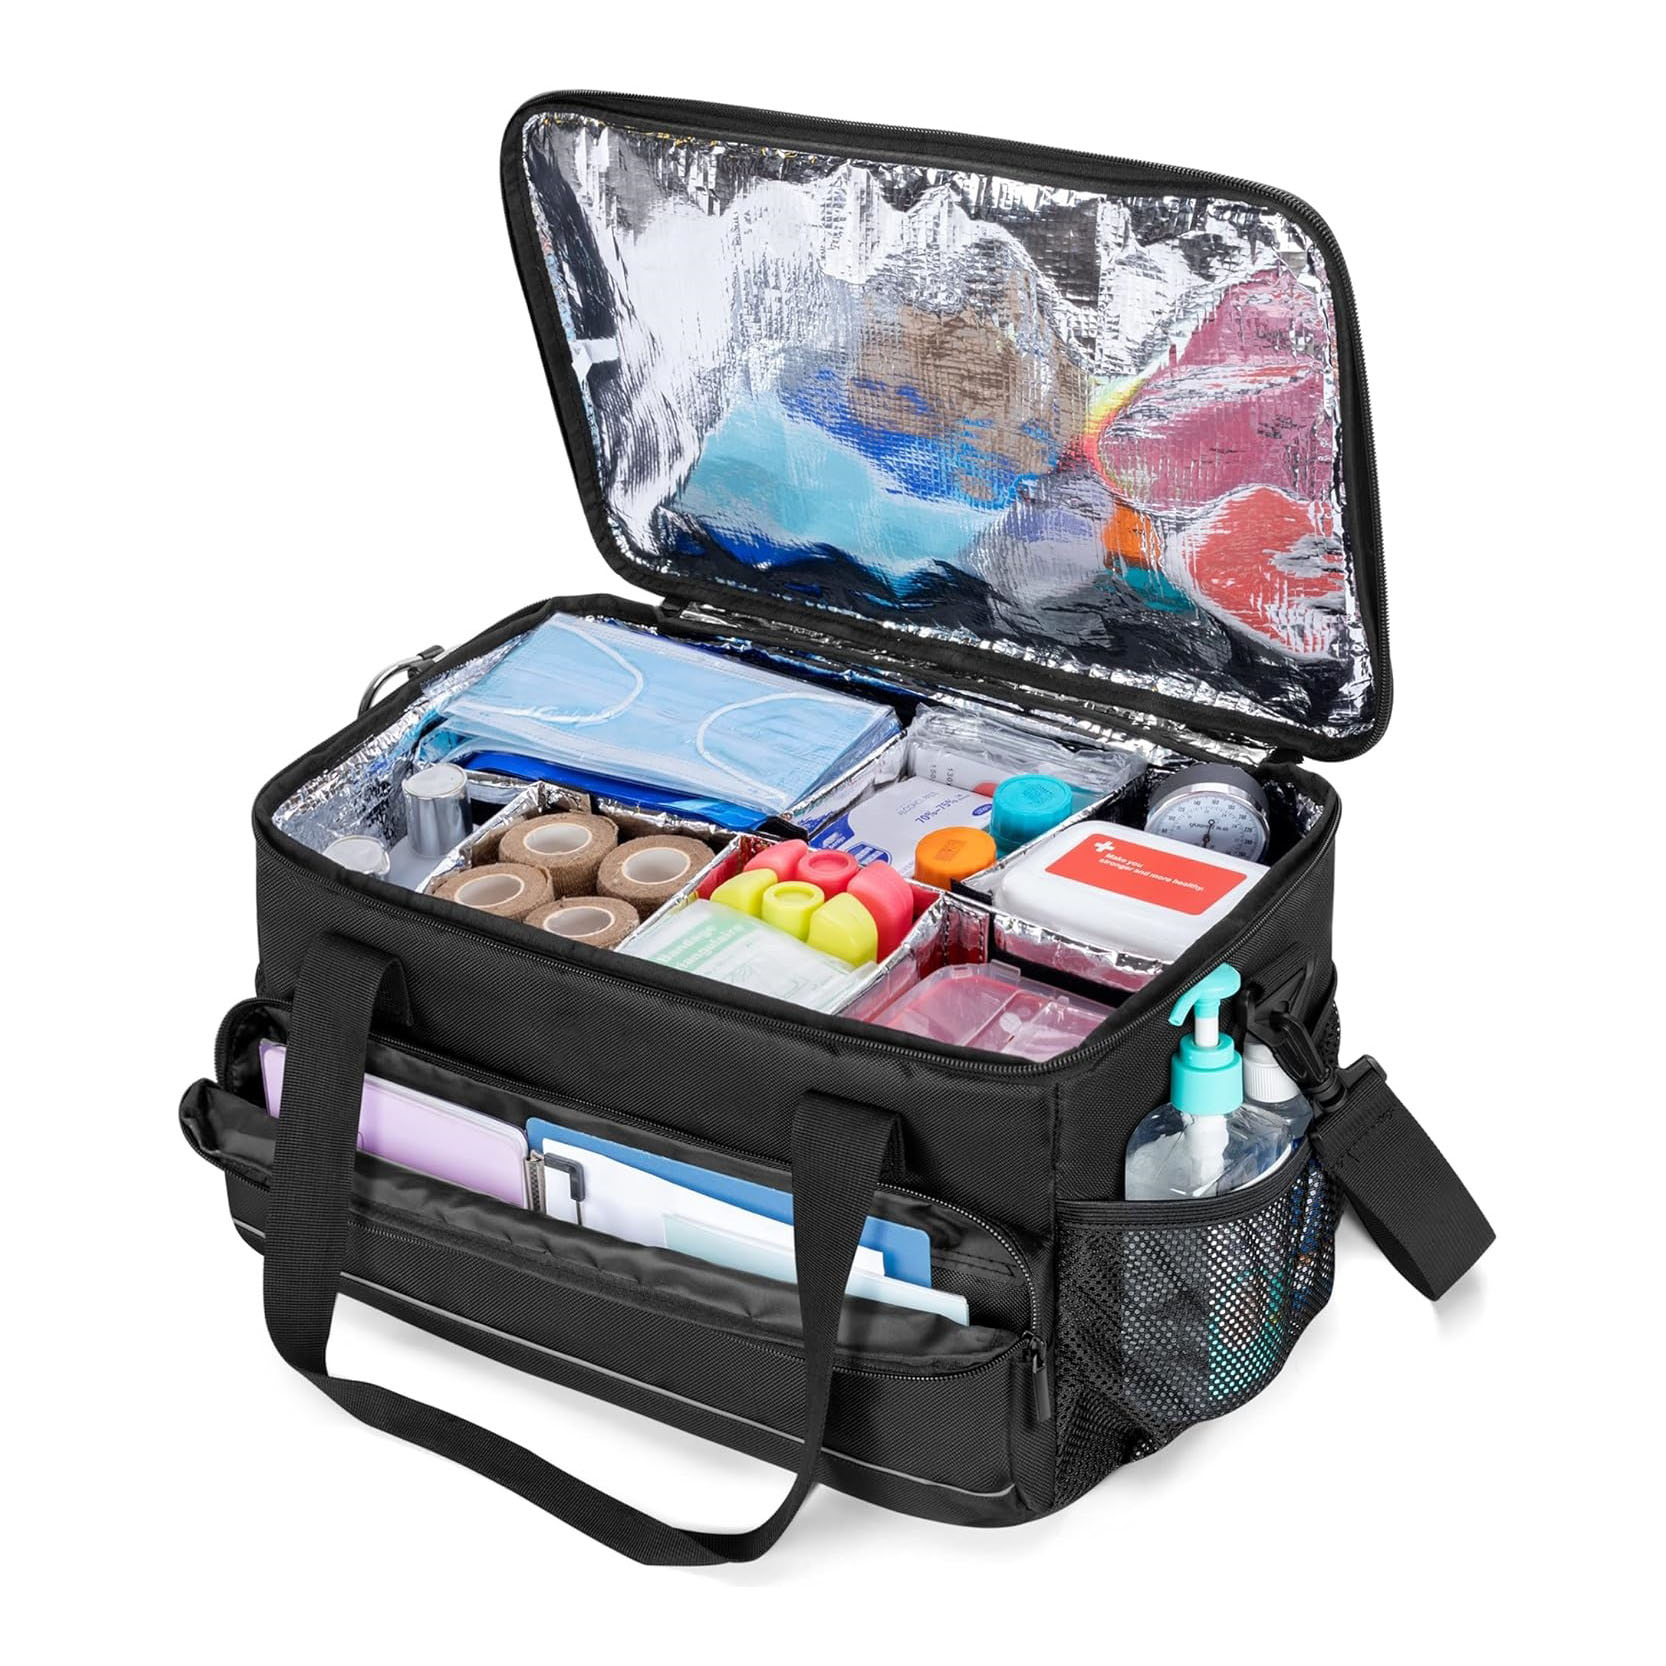 Grand sac médical isolé avec séparateurs réglables, sac de traumatologie facile à nettoyer, sac de rangement de fournitures médicales